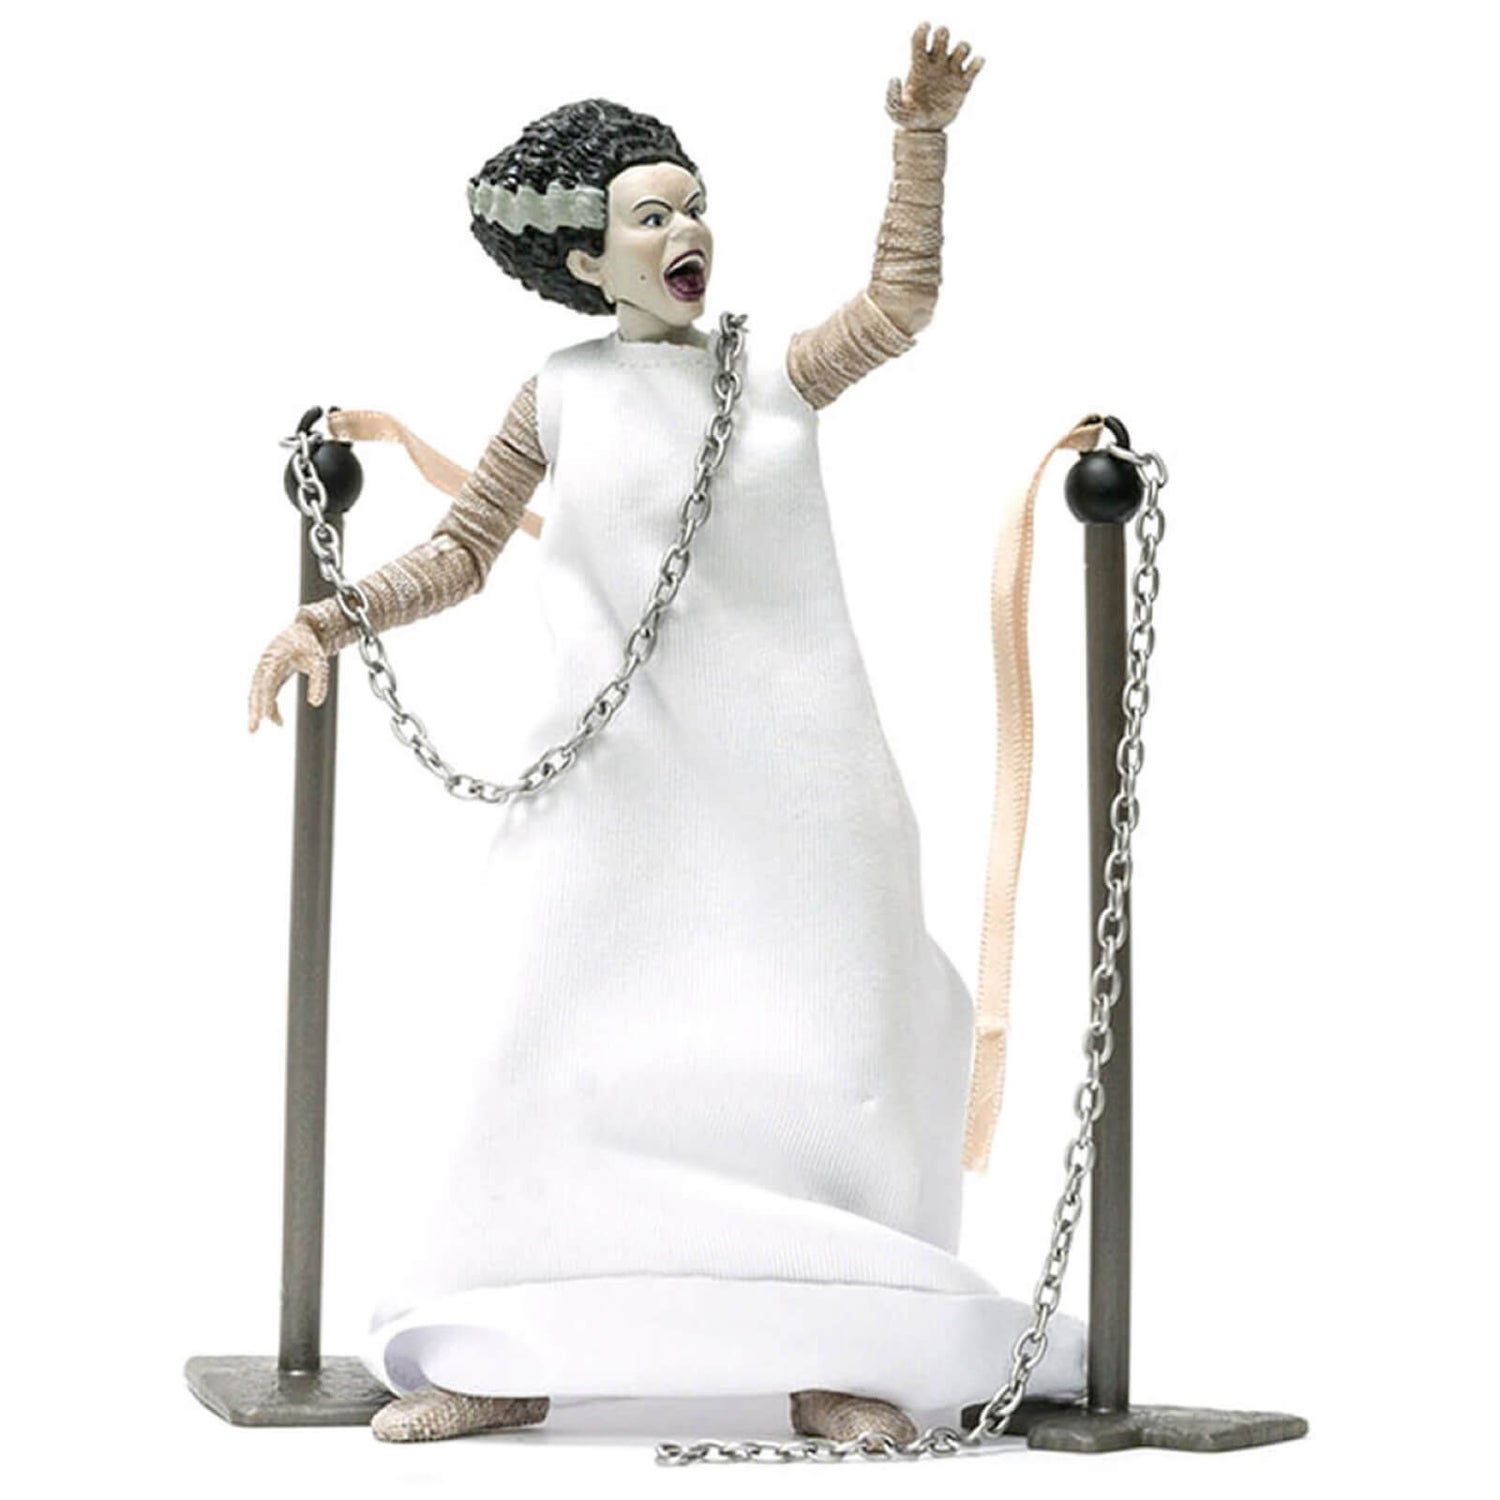 Jada Toys Universal Monsters Bride of Frankenstein 6 Inch Deluxe Collector Action Figure